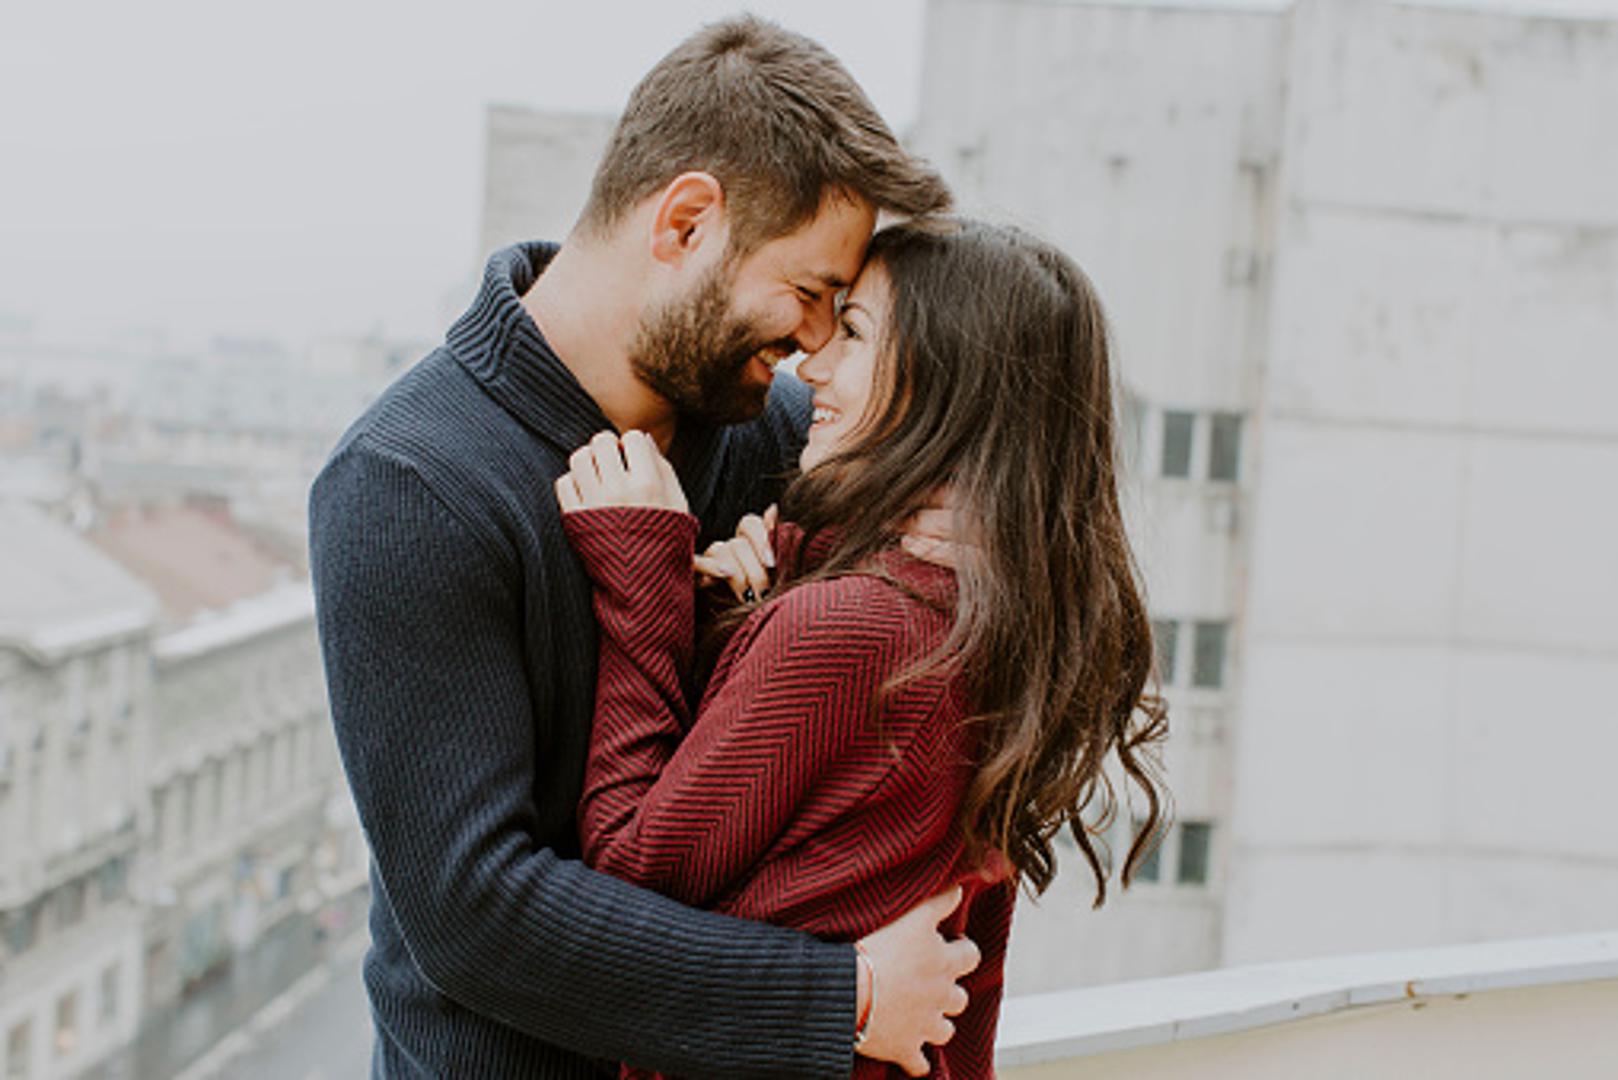 Vaga - Voli romantiku i traži da partner cijeni trud koji ulažu u vezu. Jedna od najromantičnijih stvari koju možete napraviti za vagu jest da napišete romantično pismo u kojem ćete navesti zašto je volite i zašto je vaša veza tako posebna. 